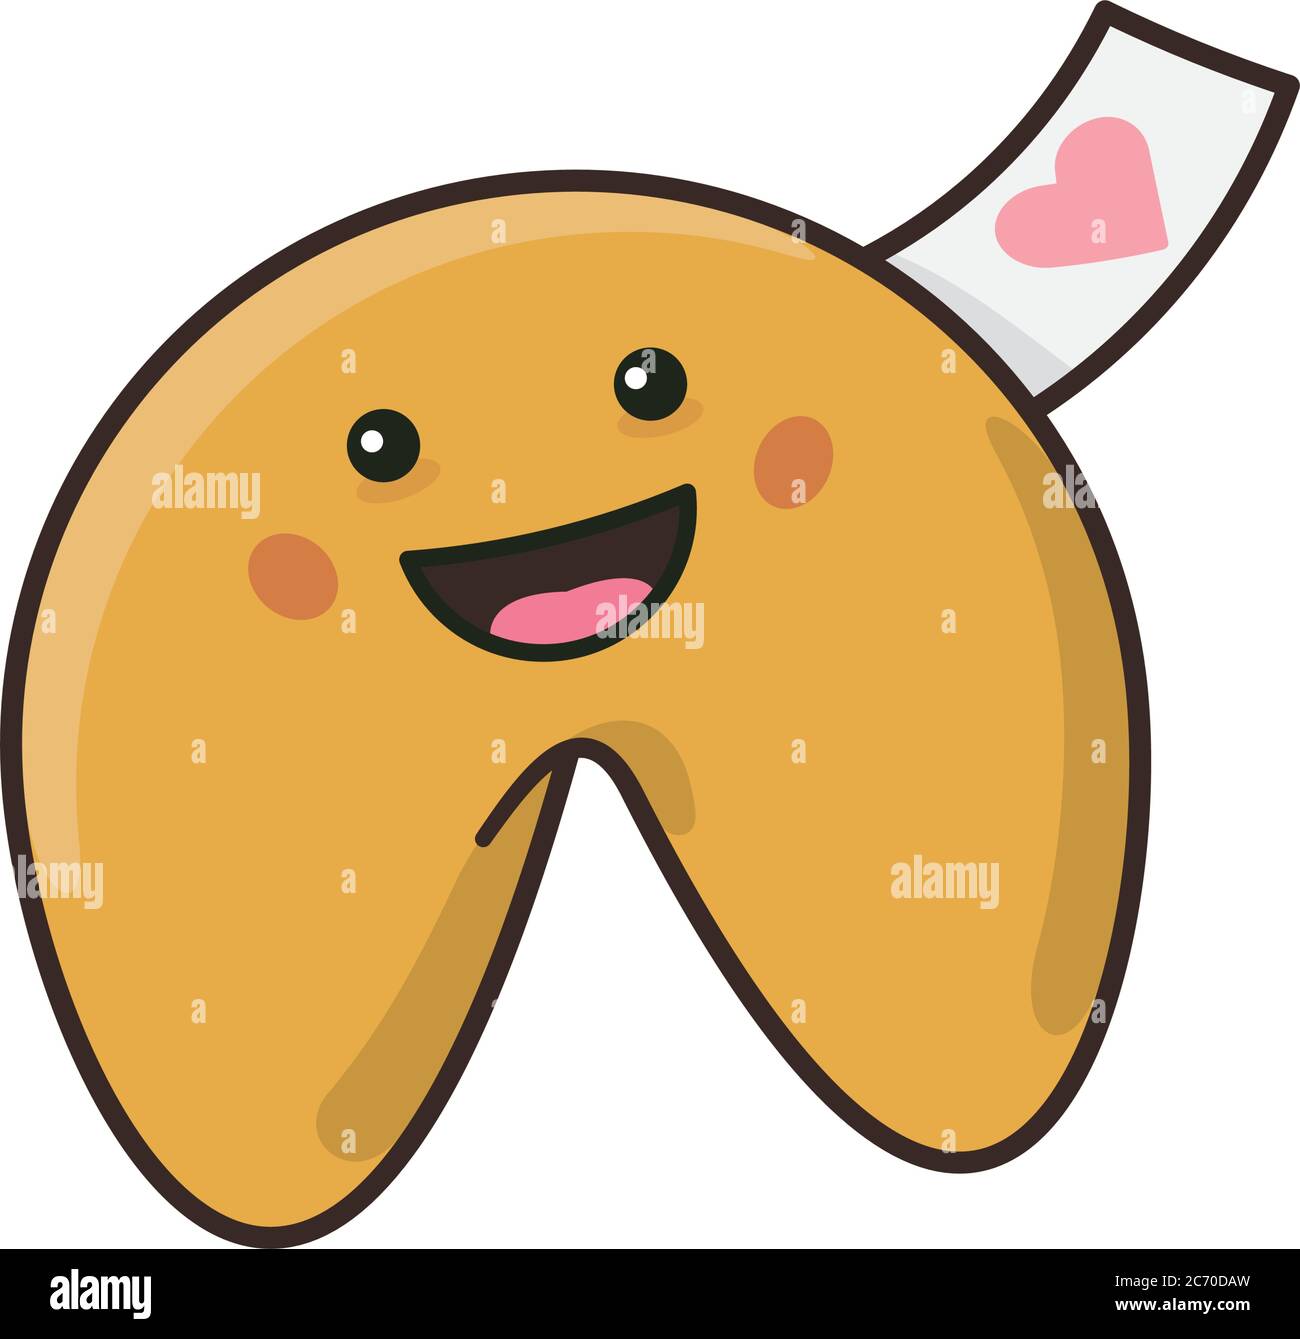 Niedliche Kawaii Glück Cookie mit valentine-Symbol auf Nachricht Slip isoliert Vektor-Illustration für Fortune Cookie Day am 20. Juli. Japanische Popkultur Stock Vektor